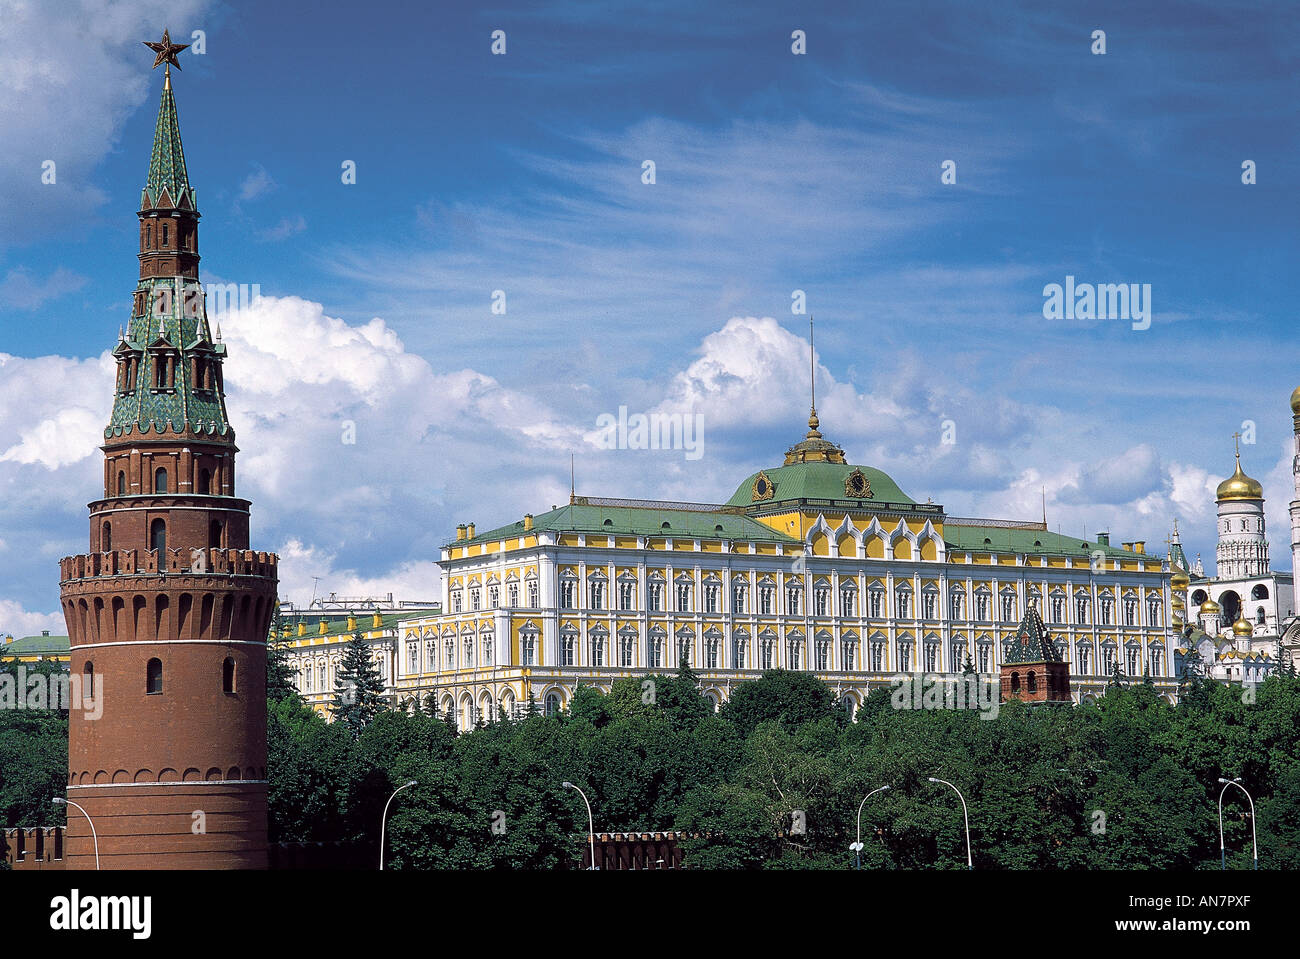 Situé derrière une banque d'arbres percés par les tours sont les murs jaune byzantin Russo du Grand Palais du Kremlin qui fut construit pour Nicholas J'en1838 49 et sert maintenant de lieu de rencontre pour le Soviet suprême Moscou Banque D'Images